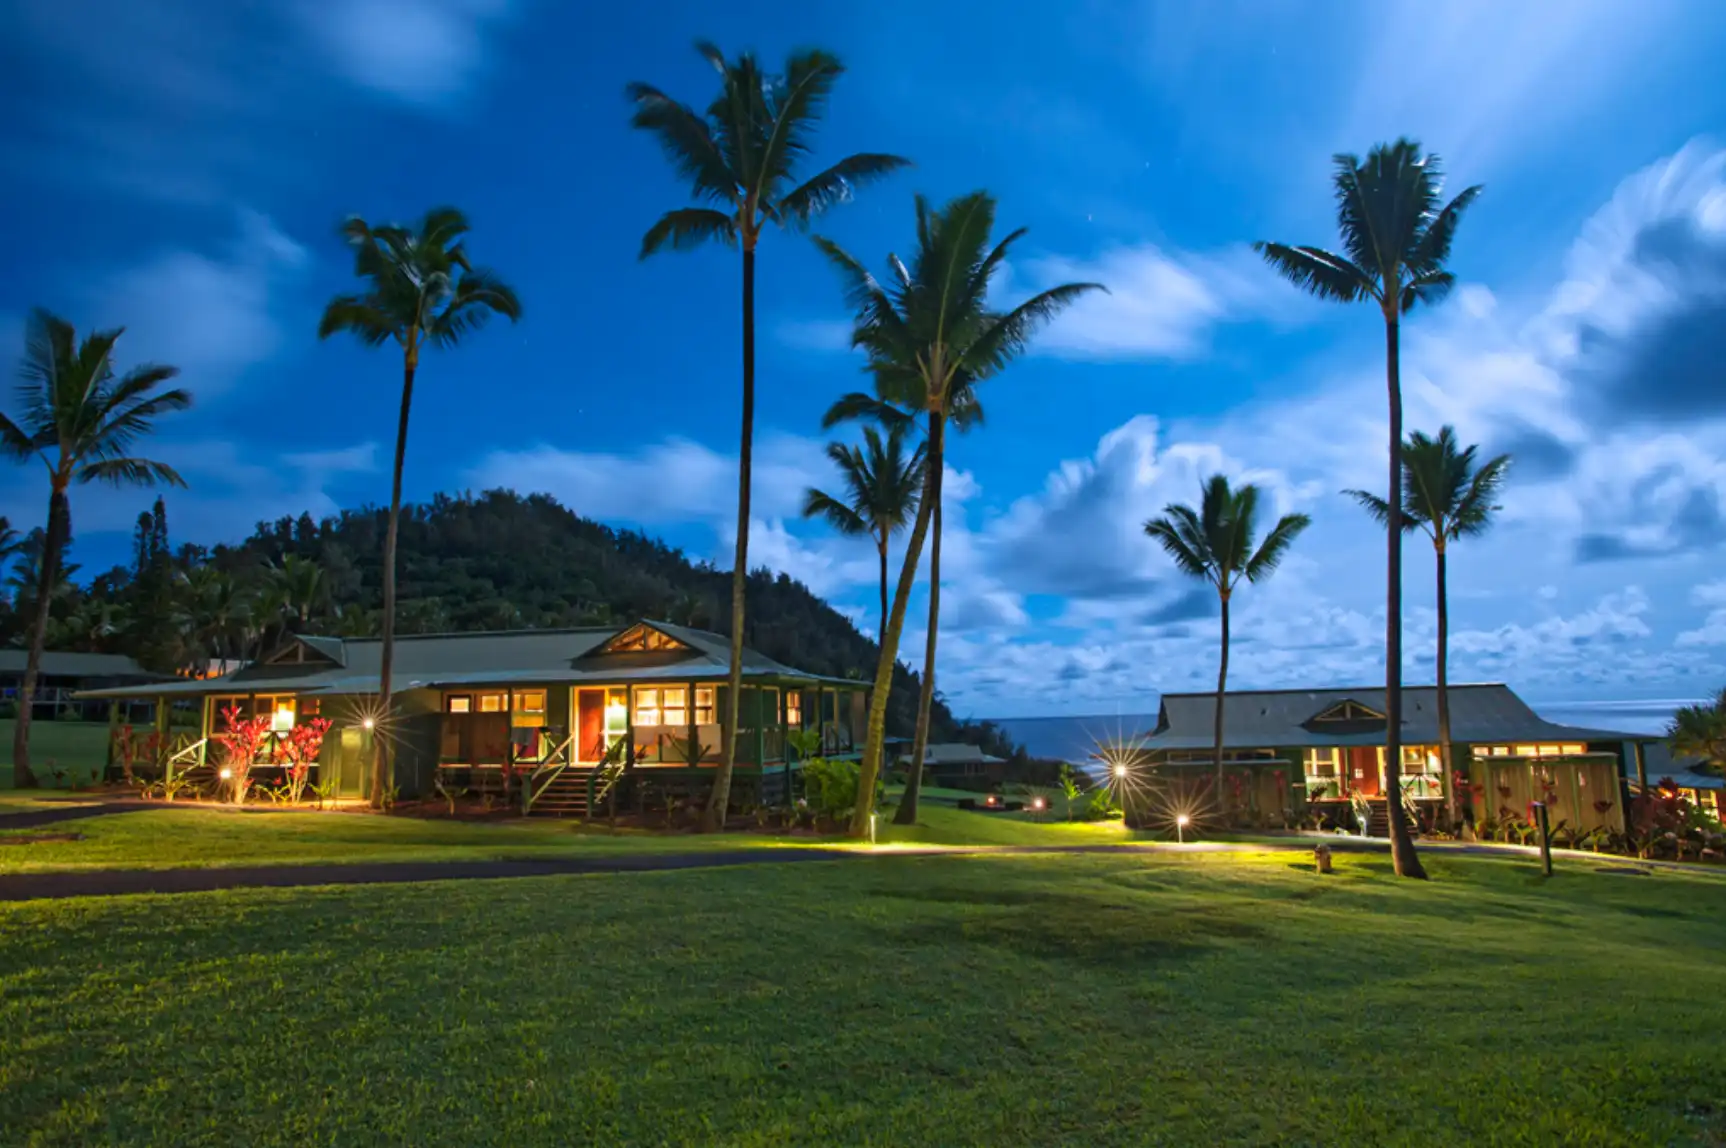 The famous Hana Resort in Hana, Maui.